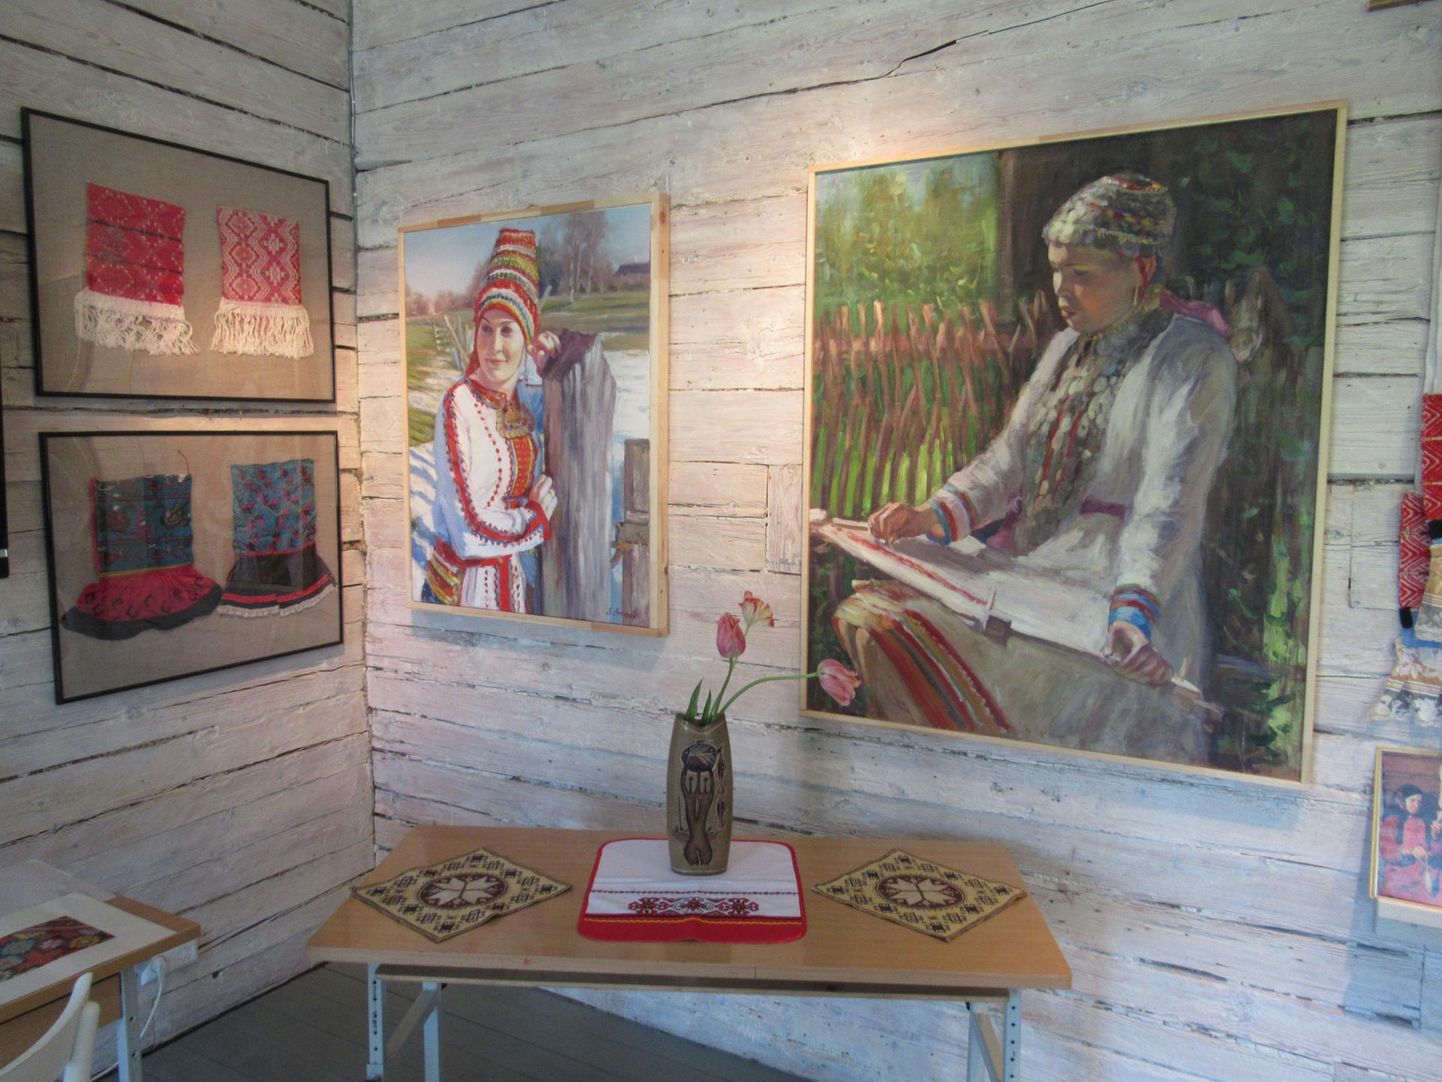 Kihnu muusemis on avatud udmurdi kunstniku Stanislav Antipovi maalide näitus “Soome-ugri rahvaste eluhetked”.